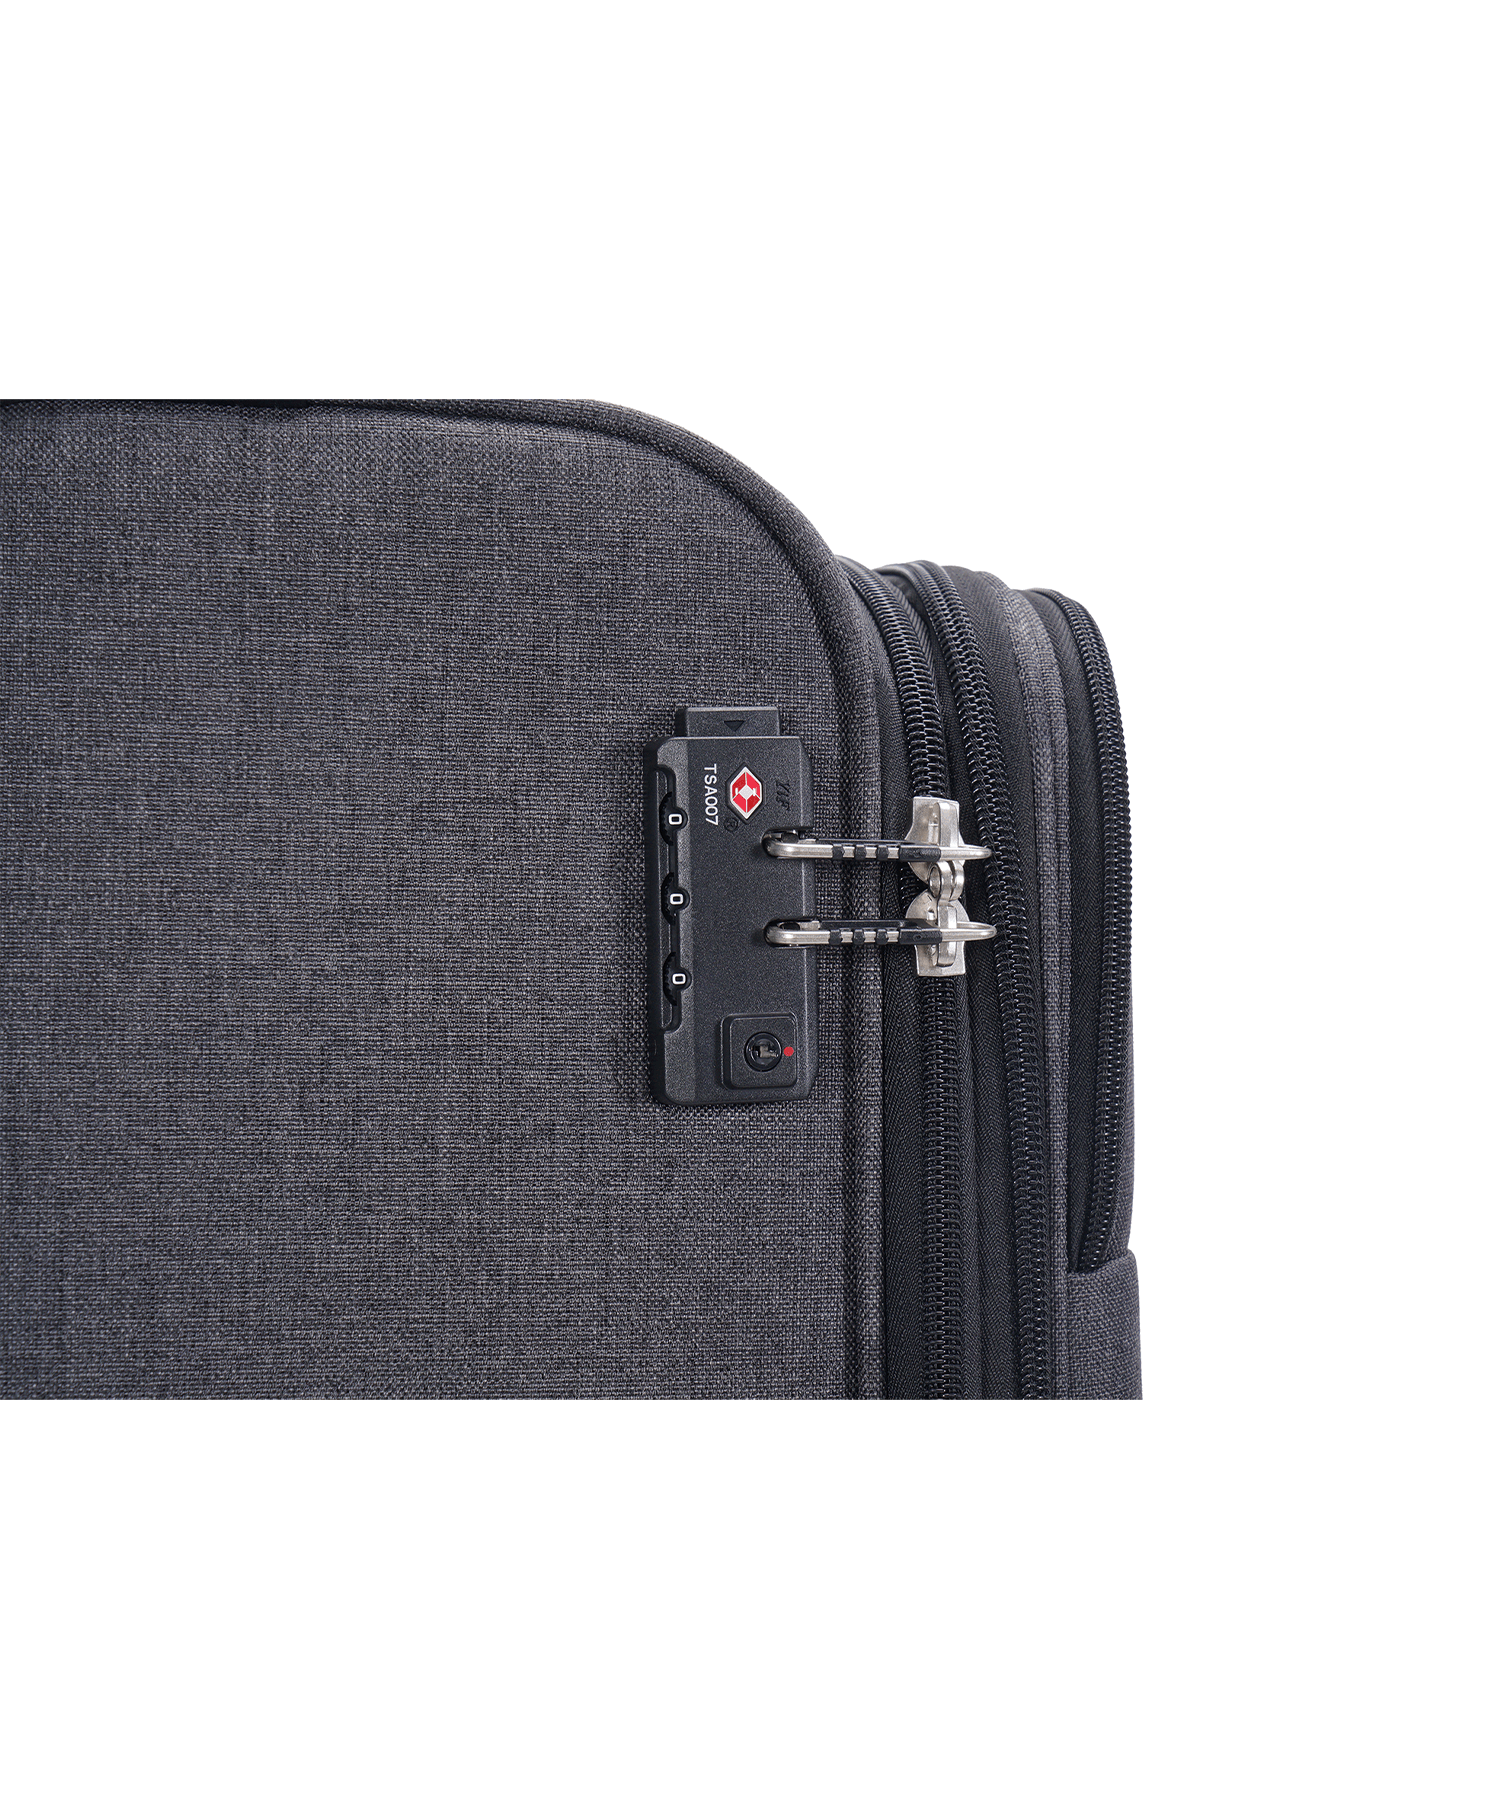 San Michelle Denim Explorer 79cm Suitcase - San Michelle Bags suitcase nz